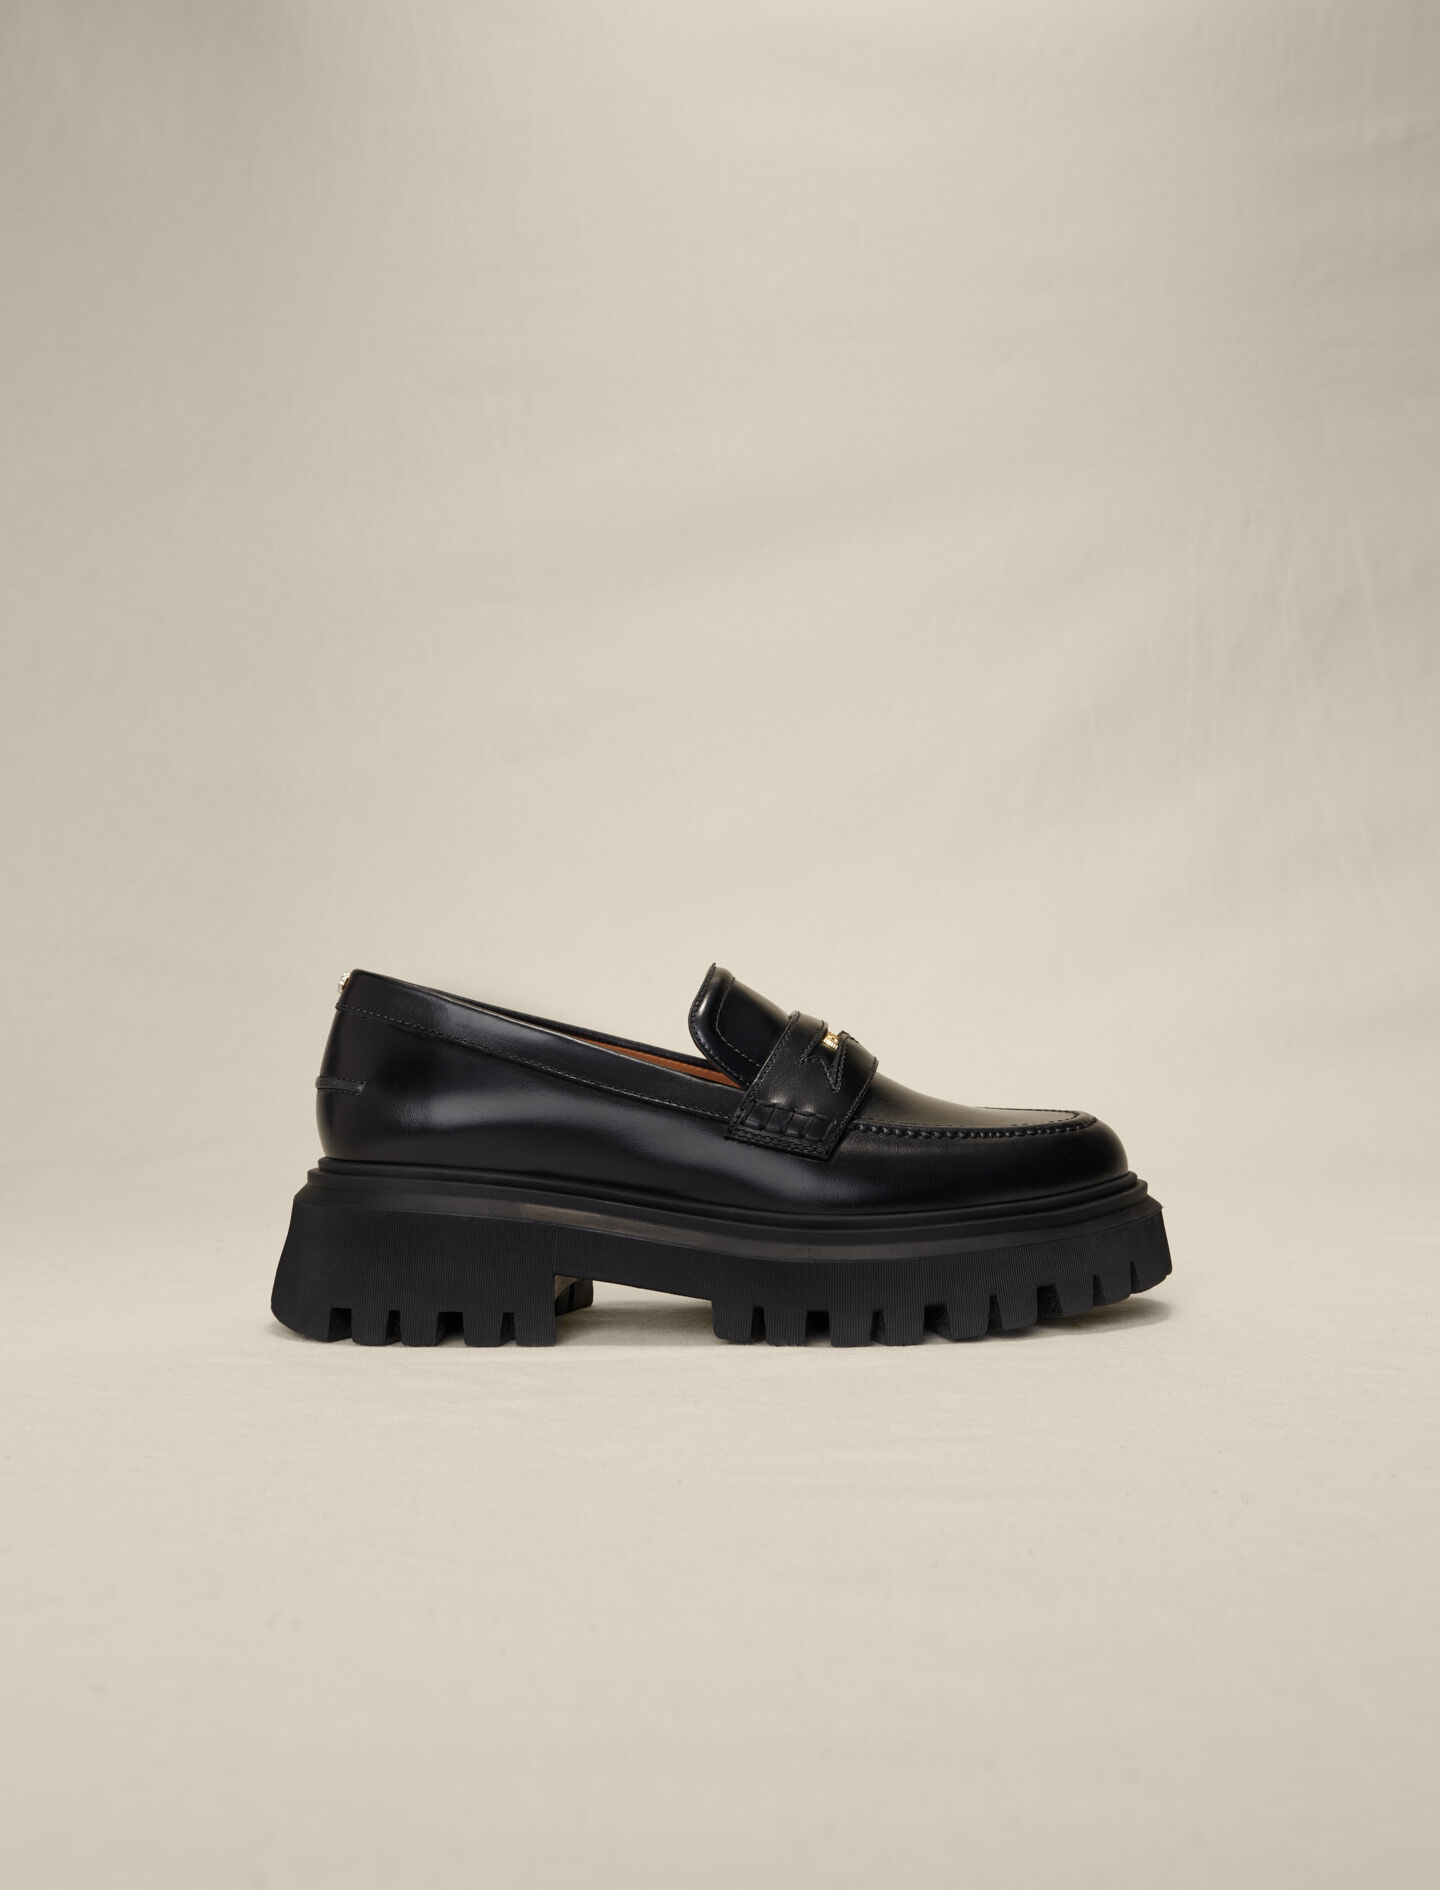 223FLOAFERMEDAILLE Leather platform loafers - Sling-Back & Sandals 